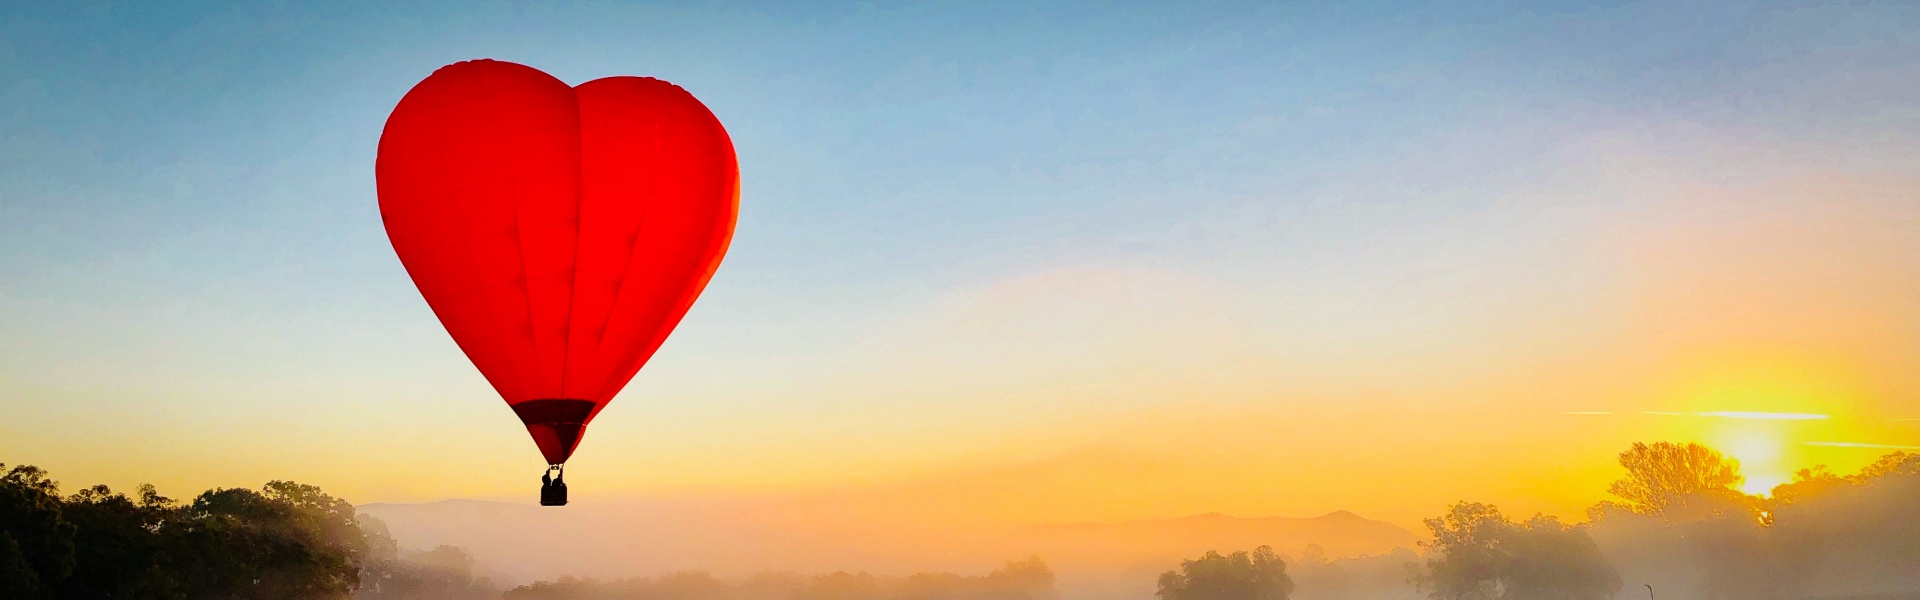  Love Heart Balloon at sunrise